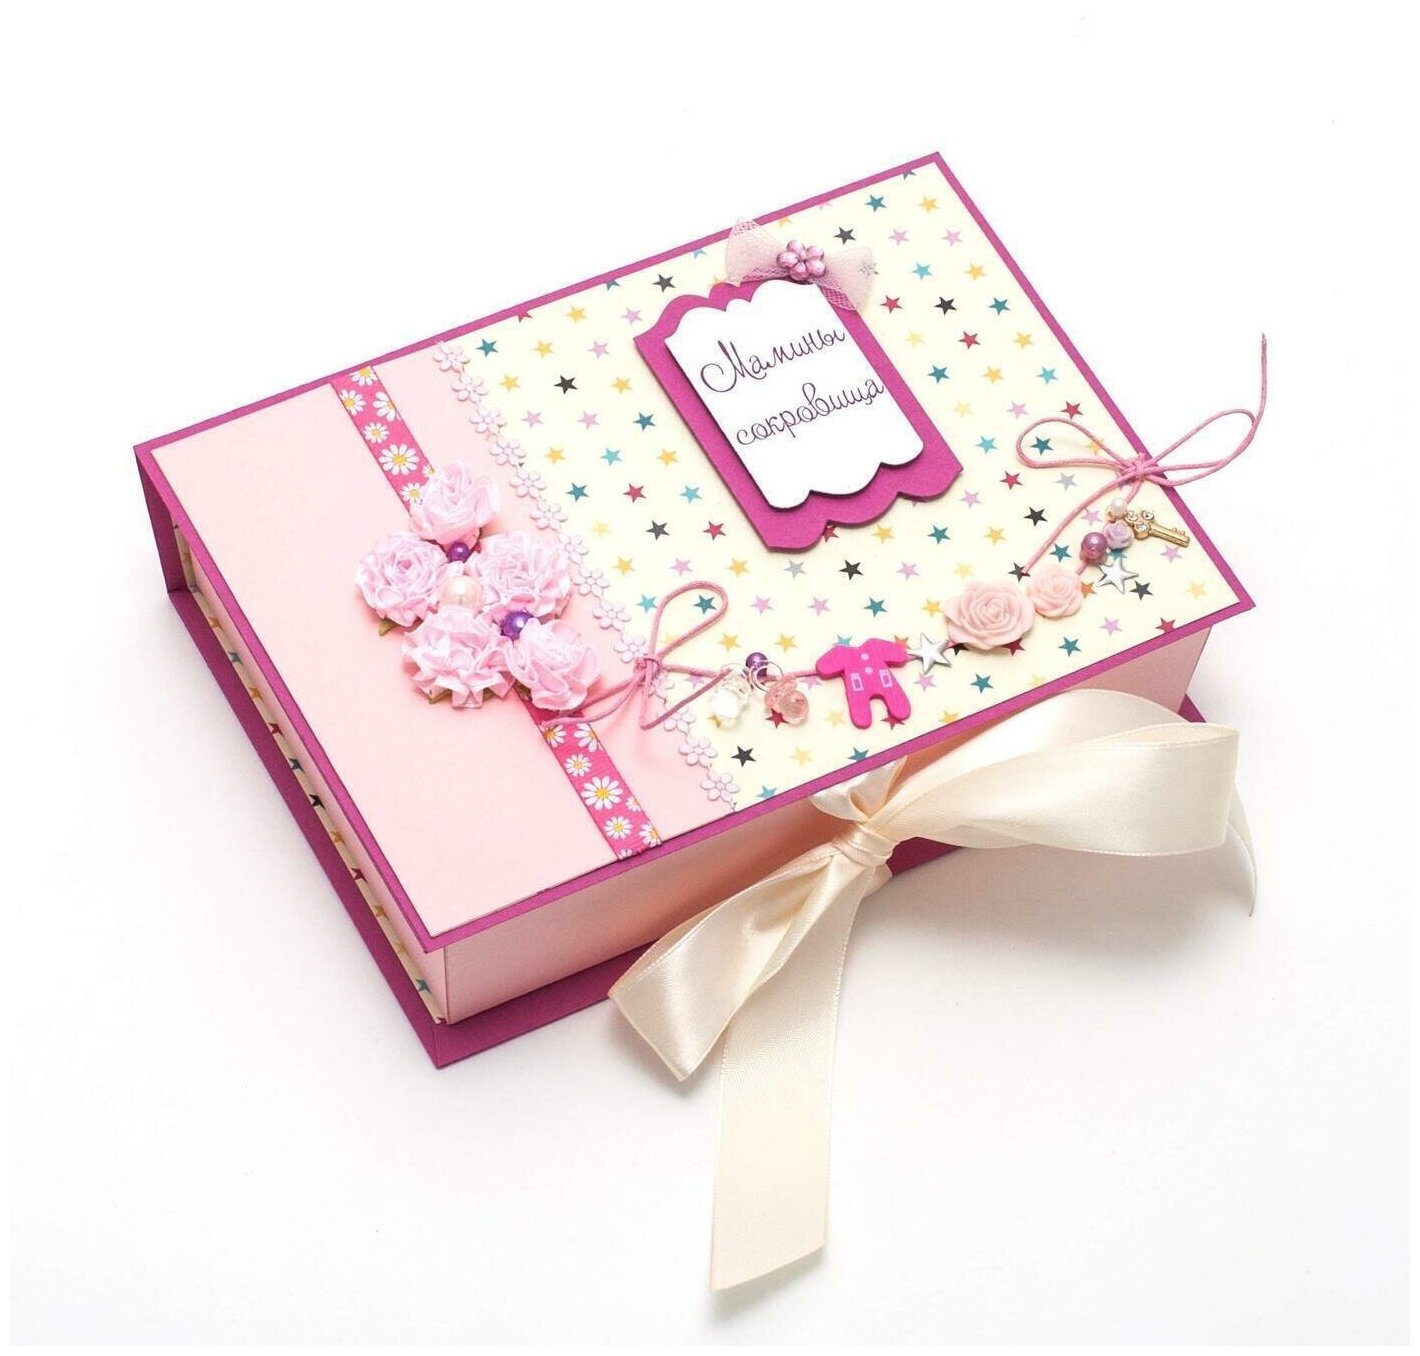 Мамины сокровища - коробочка "Нежные розы" для бирки из роддома, локонов и первого зуба новорожденной девочки, с латексными розами, белой атласной лентой и декором ручной работы в розовой гамме